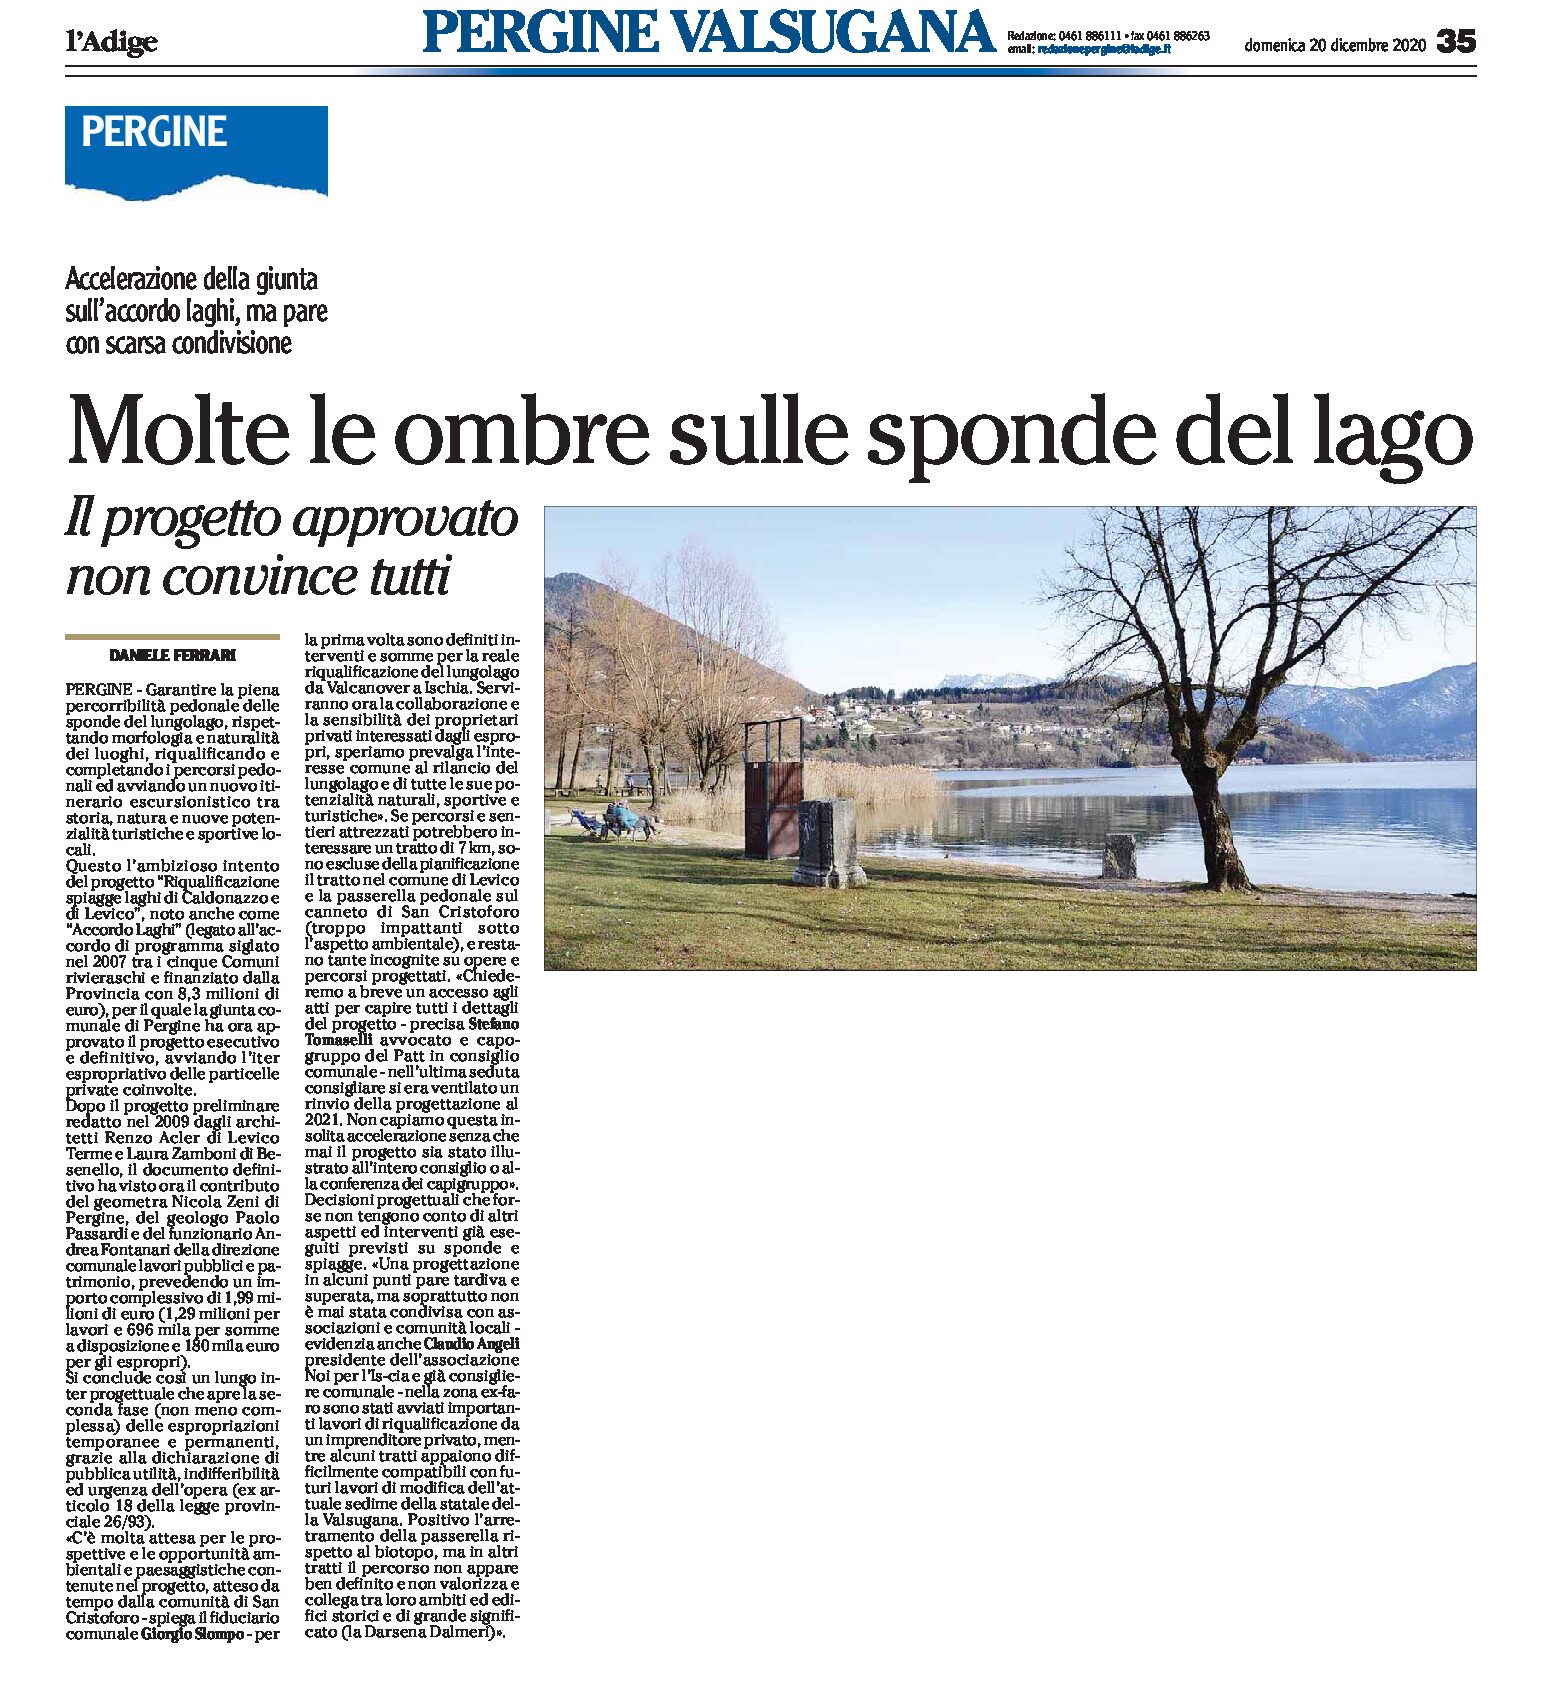 Accordo Laghi: molte ombre sulle sponde del lago di Caldonazzo